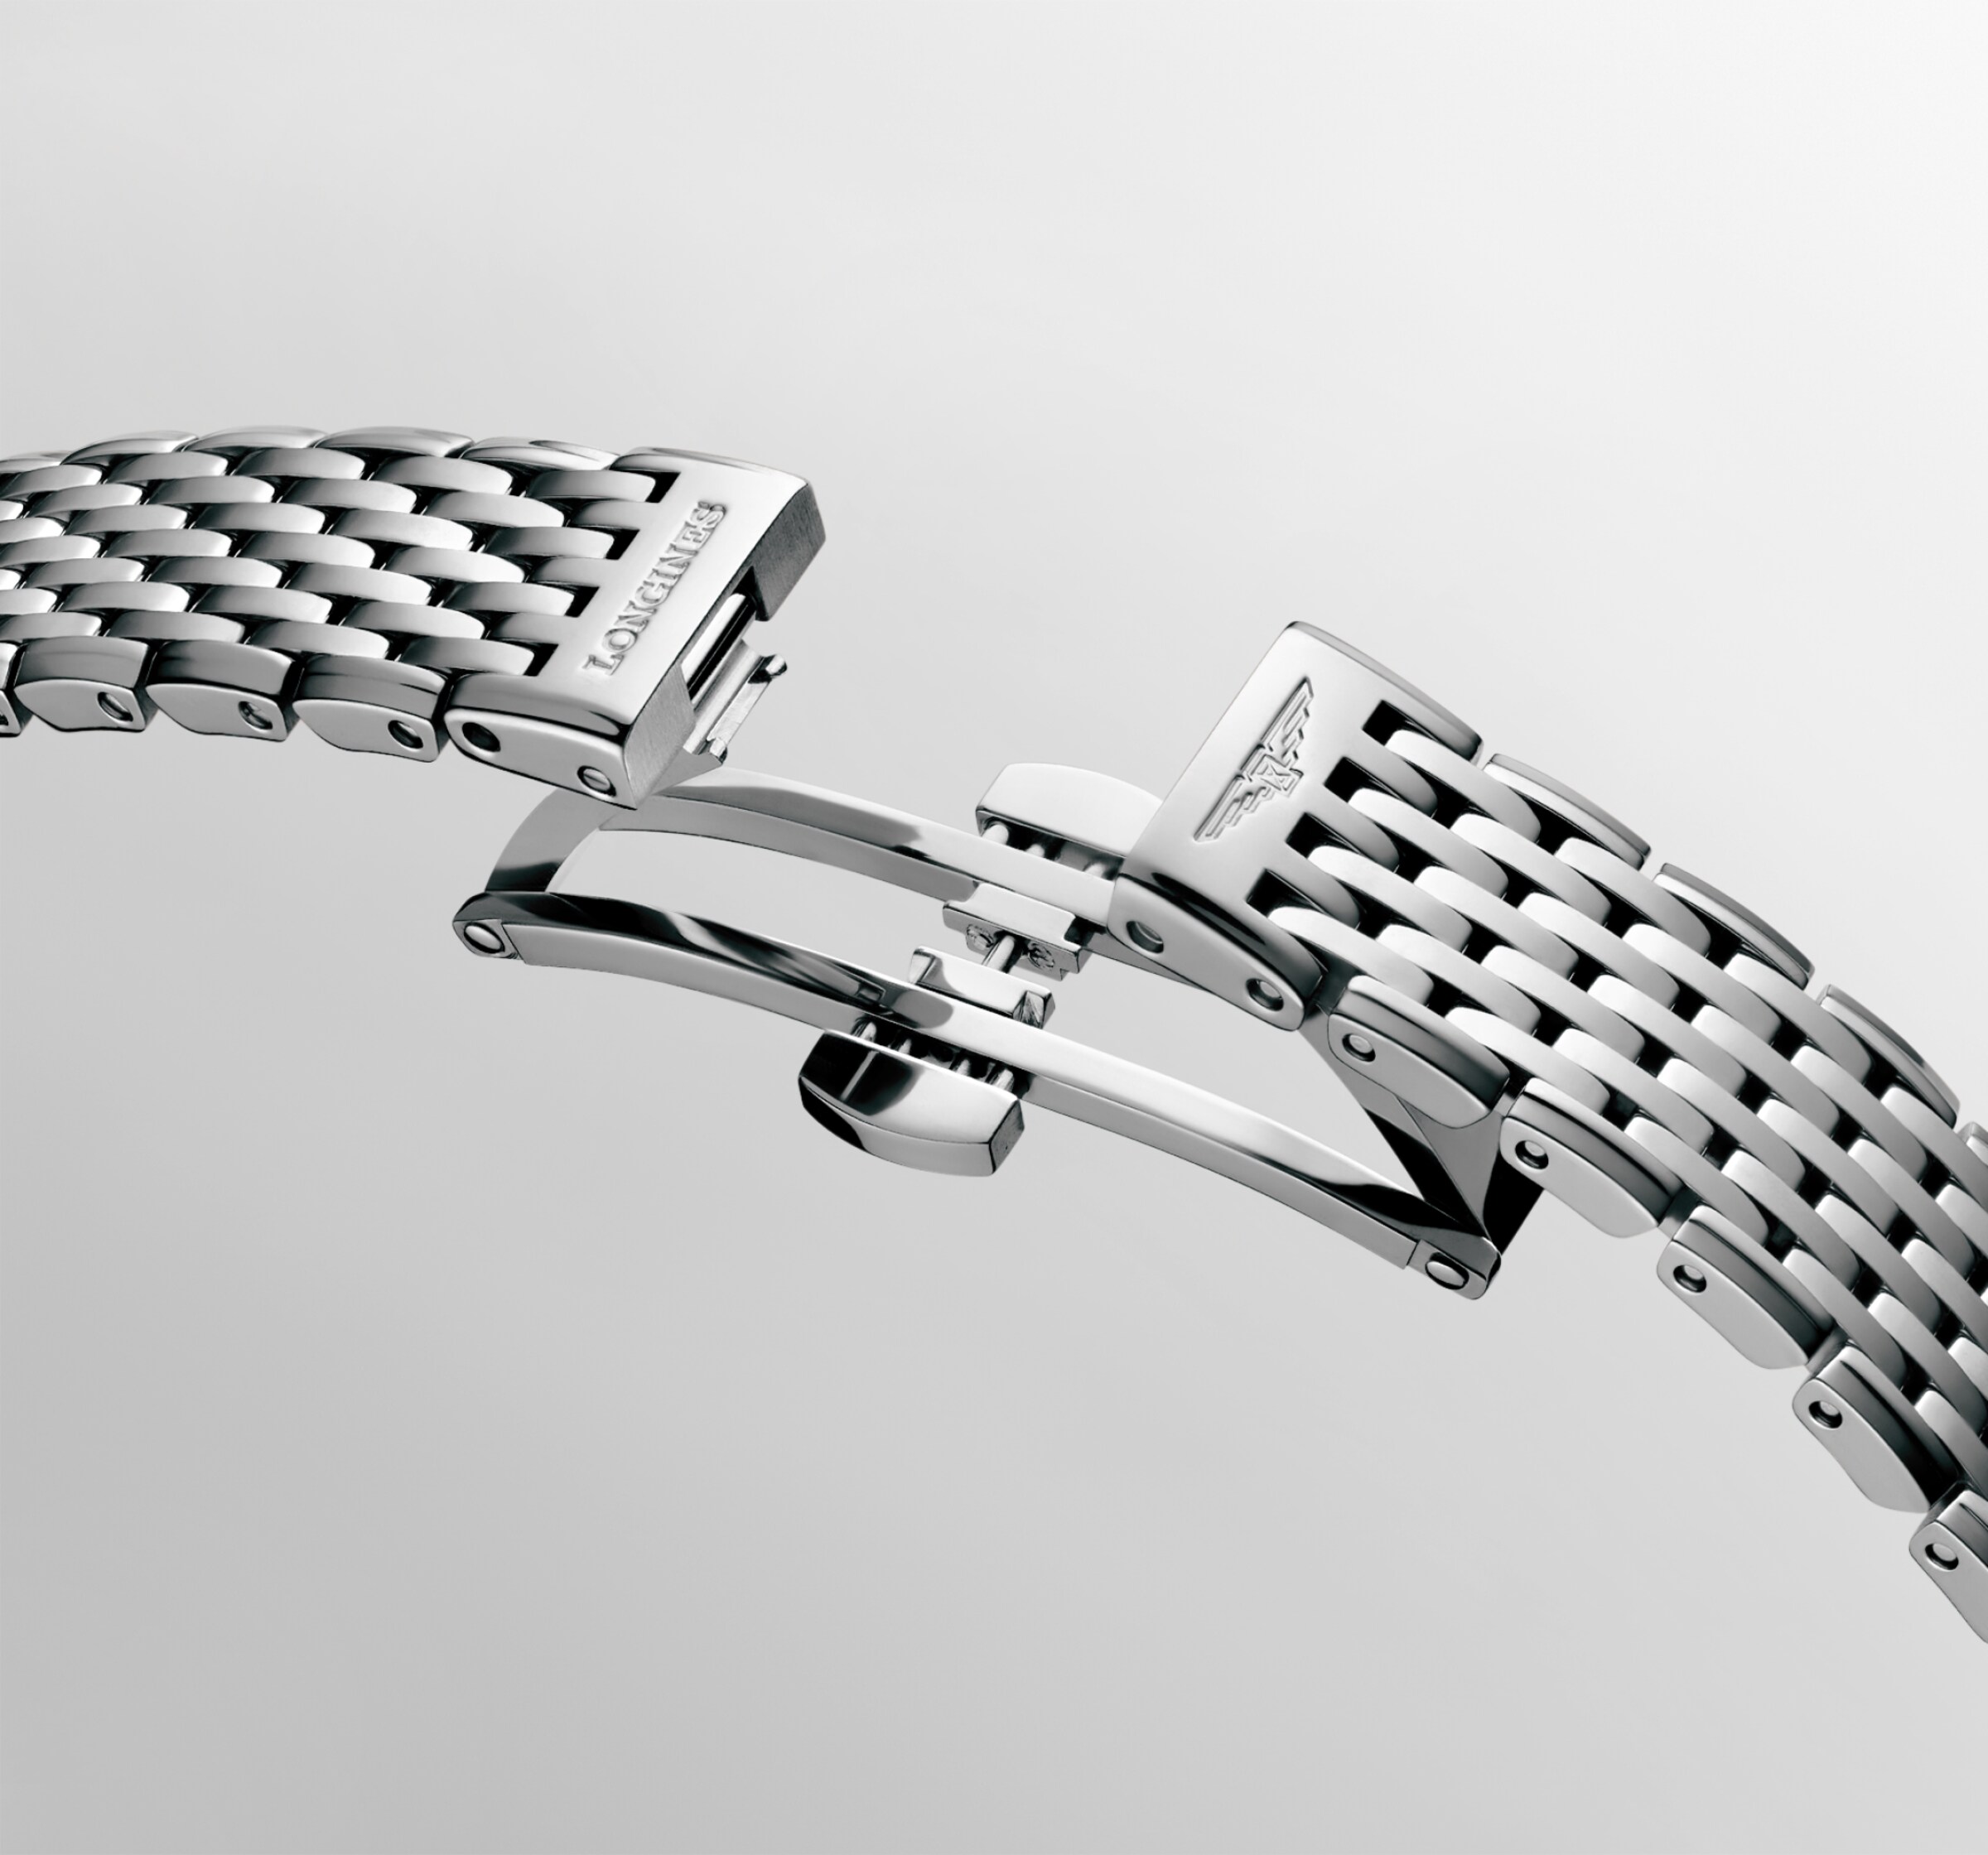 Longines LA GRANDE CLASSIQUE DE LONGINES Quartz Stainless steel Watch - L4.341.0.11.6